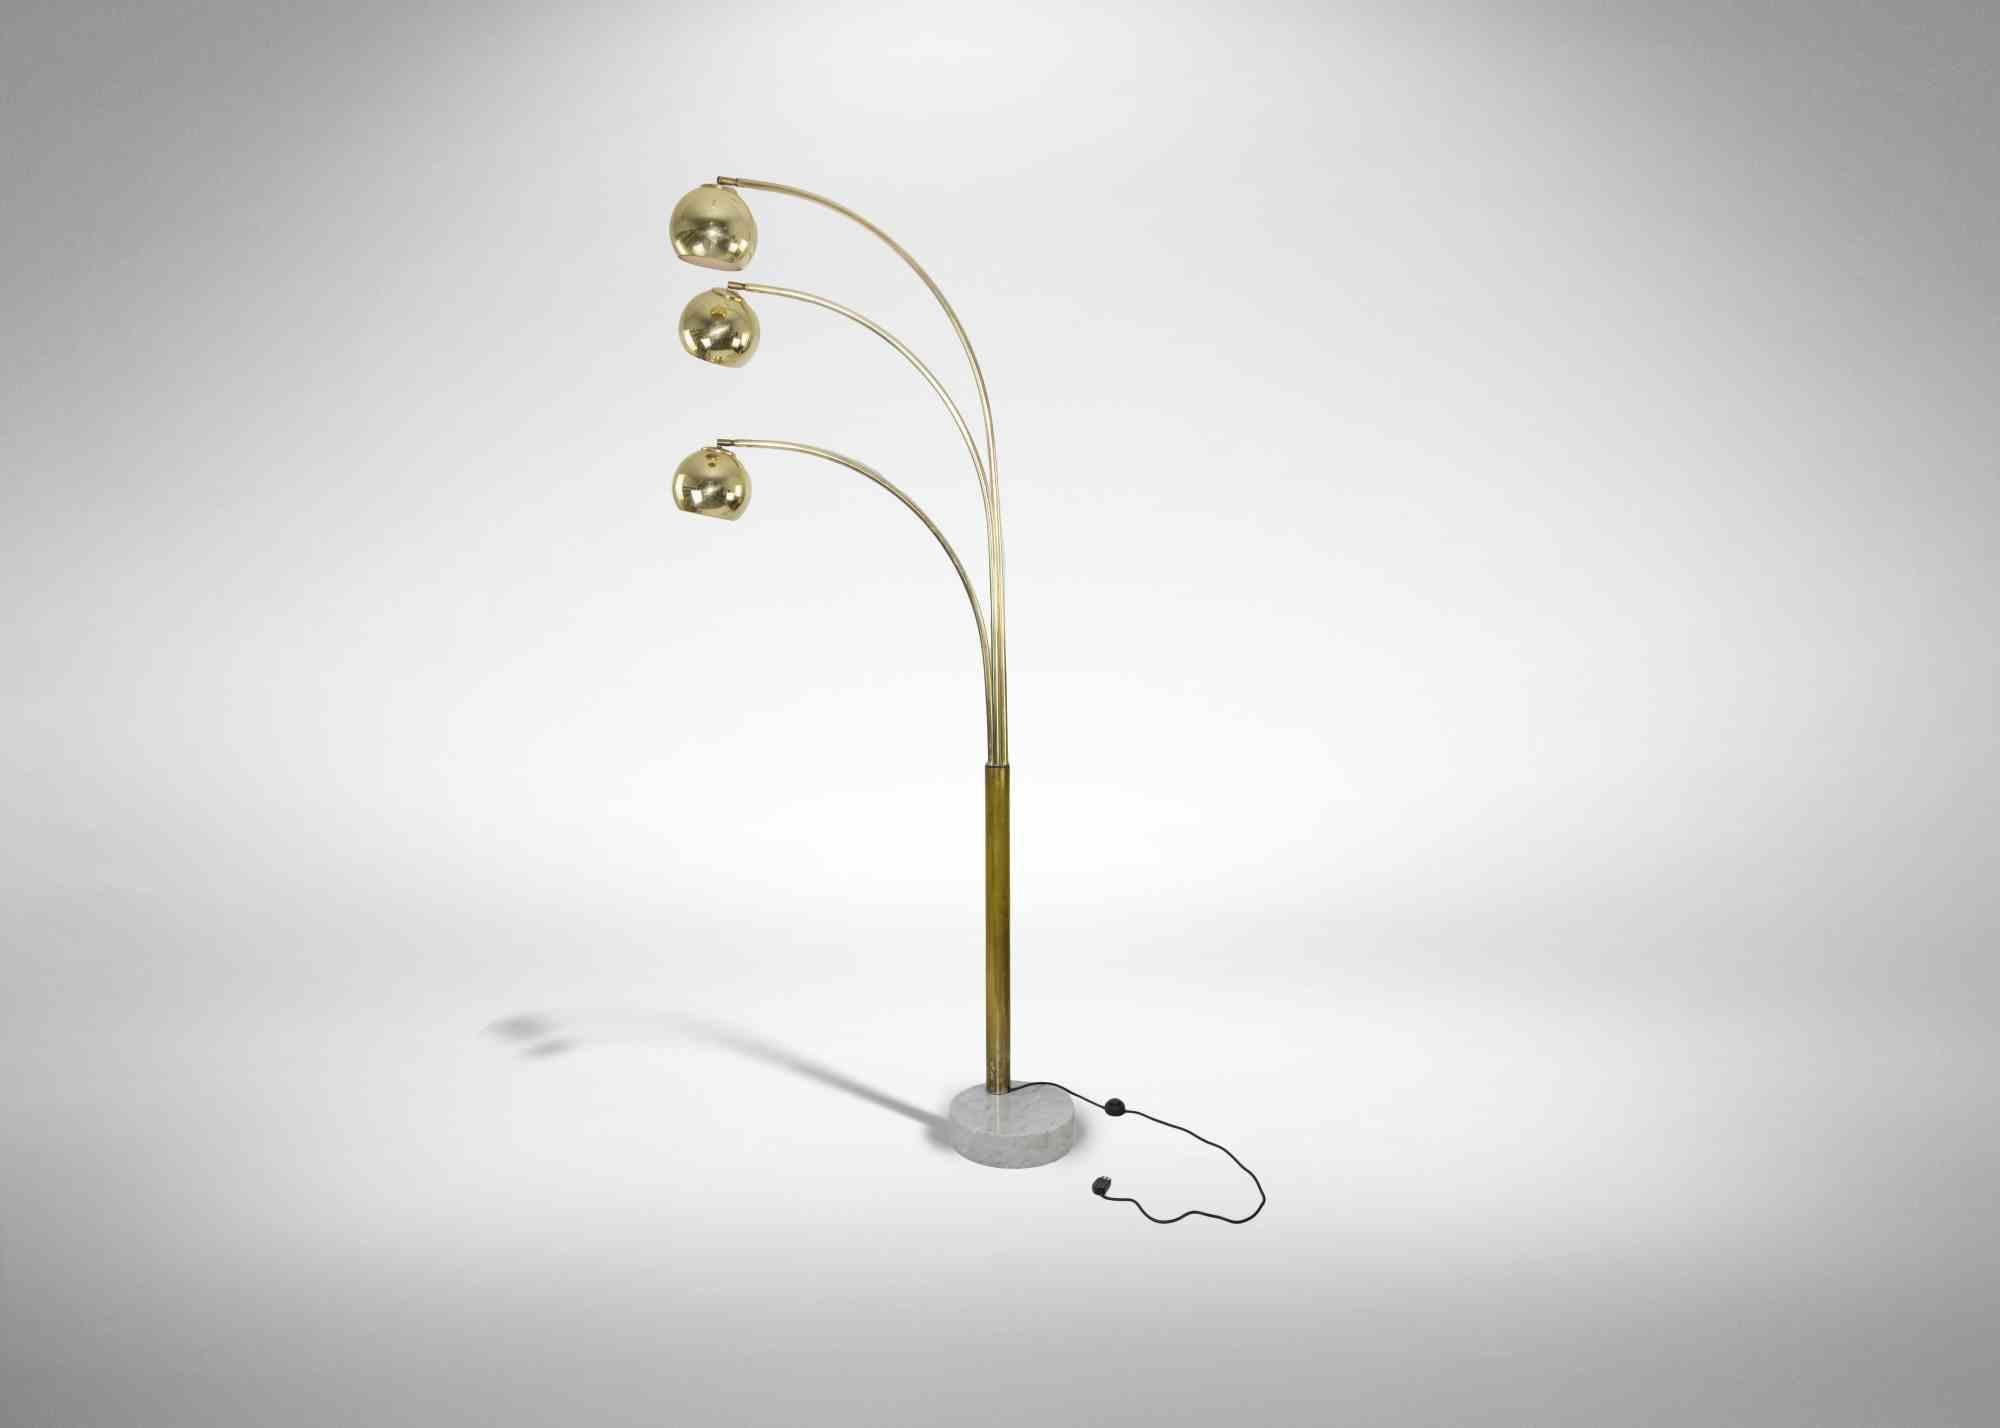 Lampadaire Vintage réalisé par Goffredo Reggiani, Italie, dans les années 1970.

Lampe en chrome doré avec base en marbre.